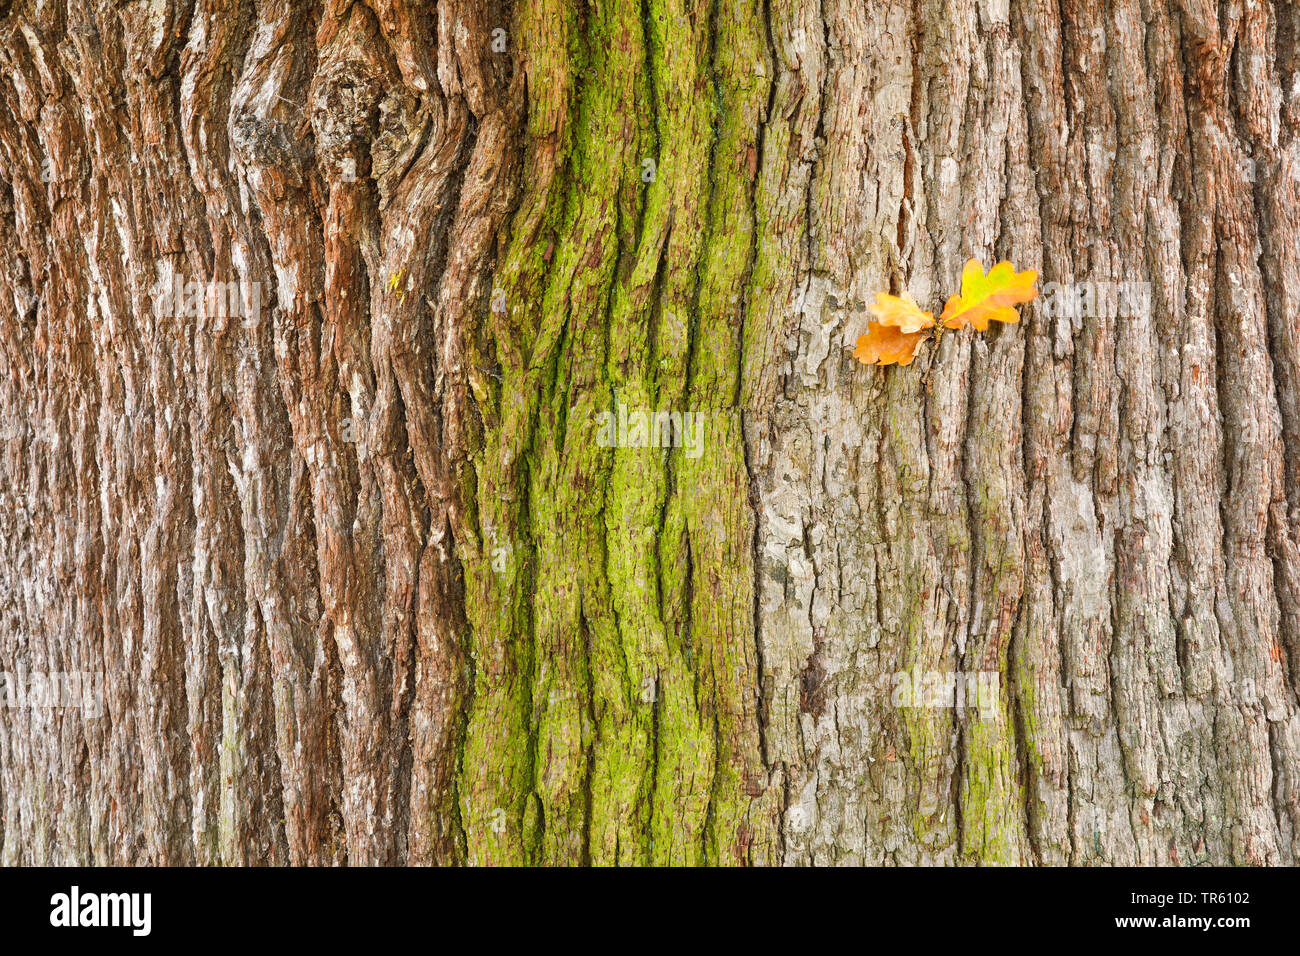 Stiel-Eiche, Stieleiche (Quercus robur. "Quercus pedunculata"), Eichenrinde von Algen ueberzogen, mit trockenen Eichenblaettern, Grossbritannien, Englan Stockfoto